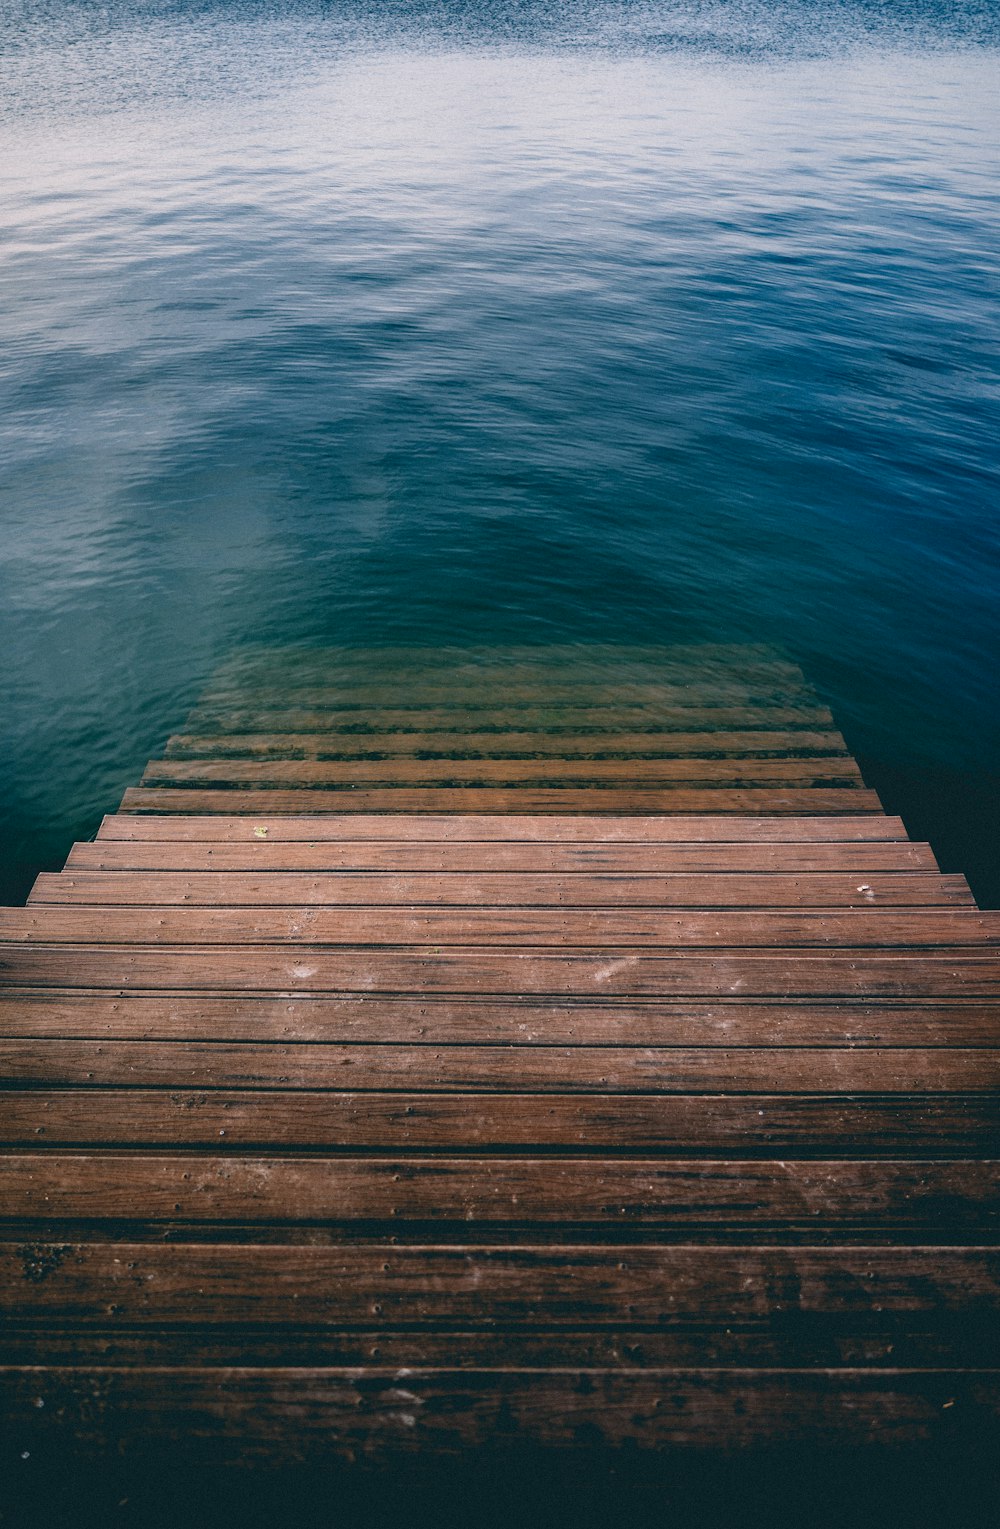 Escalera de madera marrón en un cuerpo de agua tranquilo